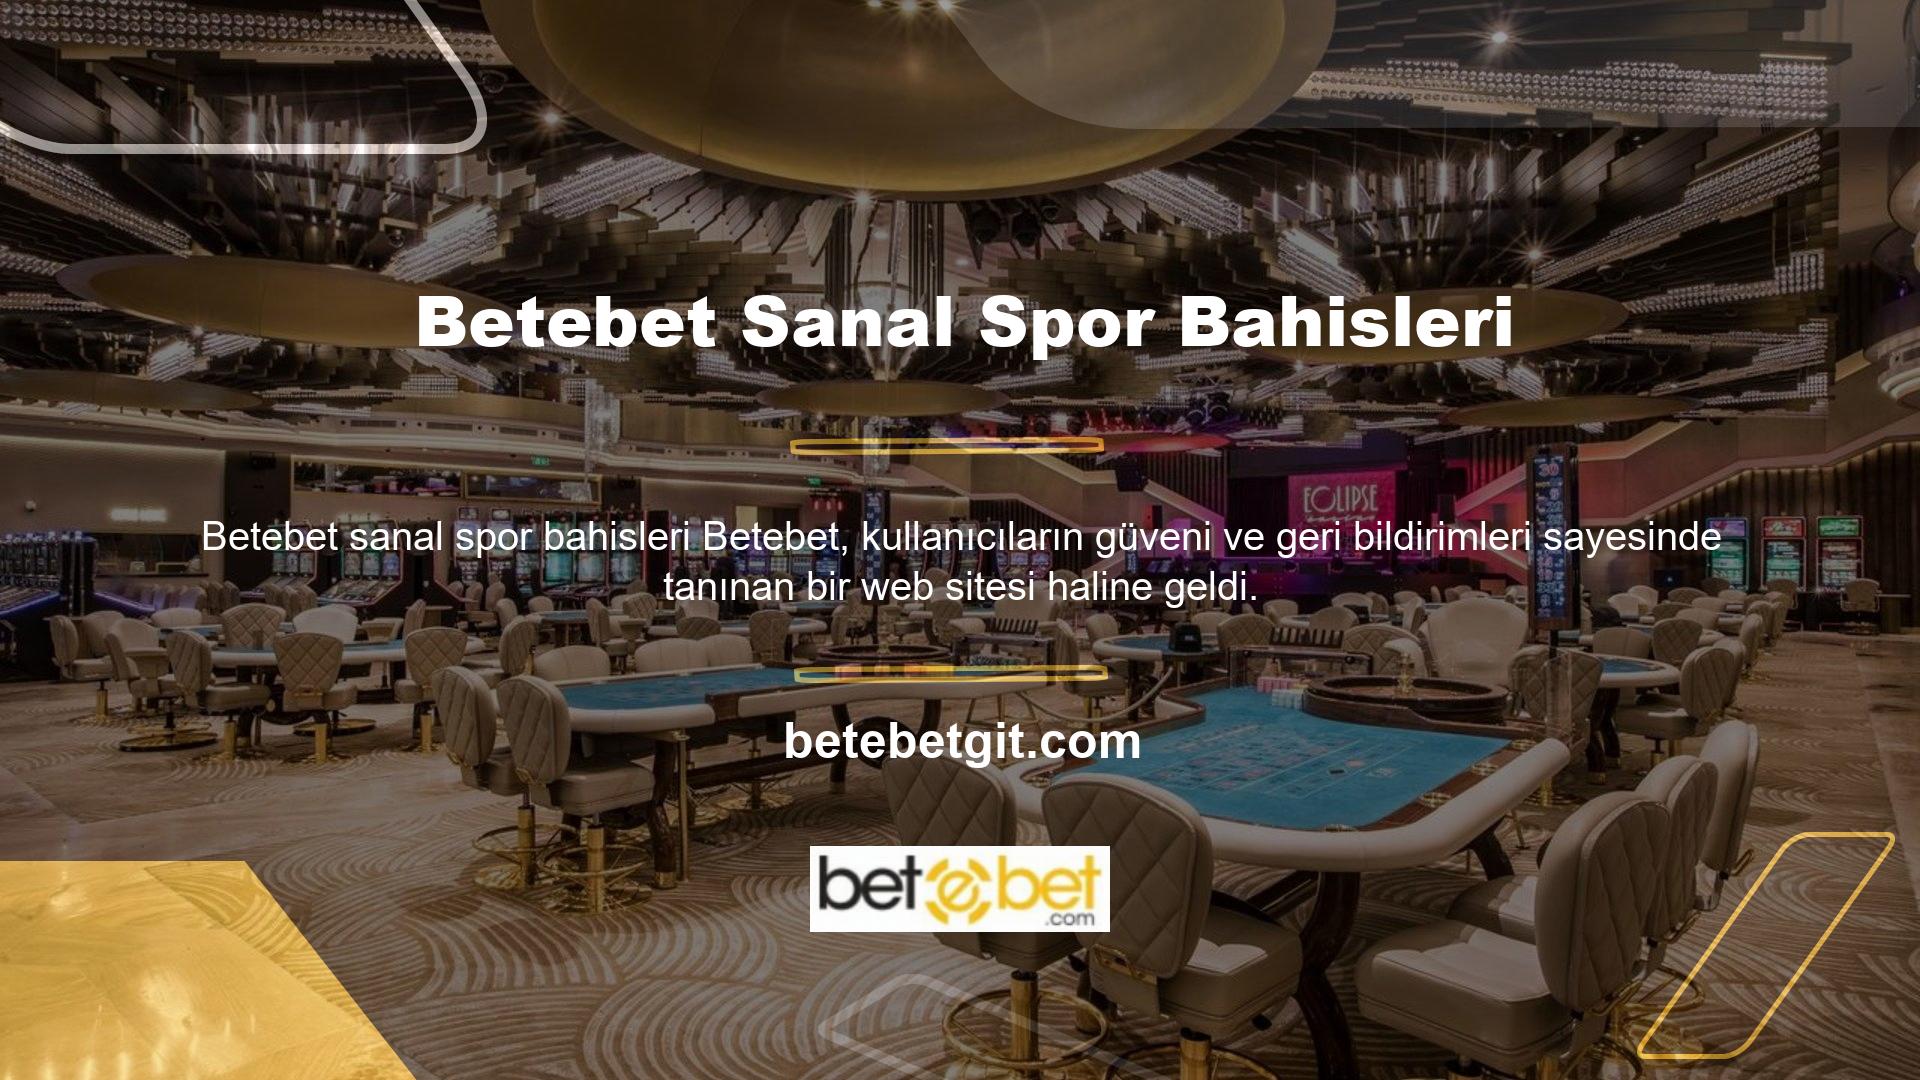 Çeşitli bahisler sunan Betebet web sitesi, Betebet çevrimiçi casinolarını ve sanal spor bahislerini tanıtıyor